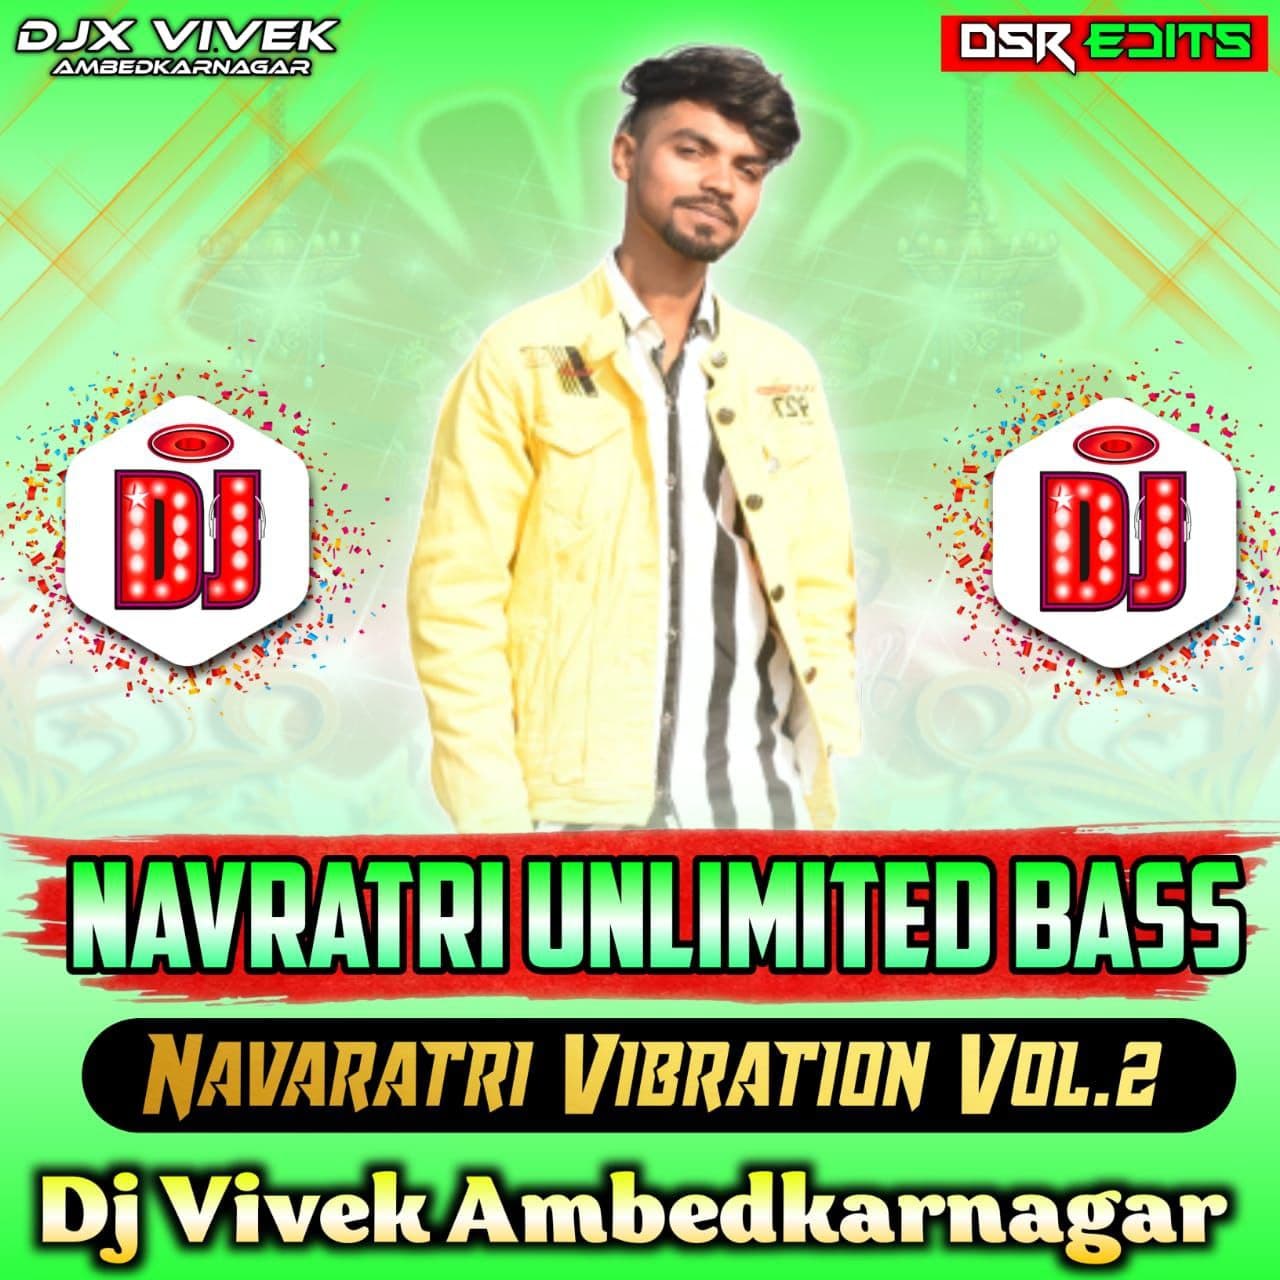 Duwara Jagrata Hoi - Khesari Lal Yadav - Navratri {Havy Bass Punch Mix} - Djx Vivek Ambedkarnagar